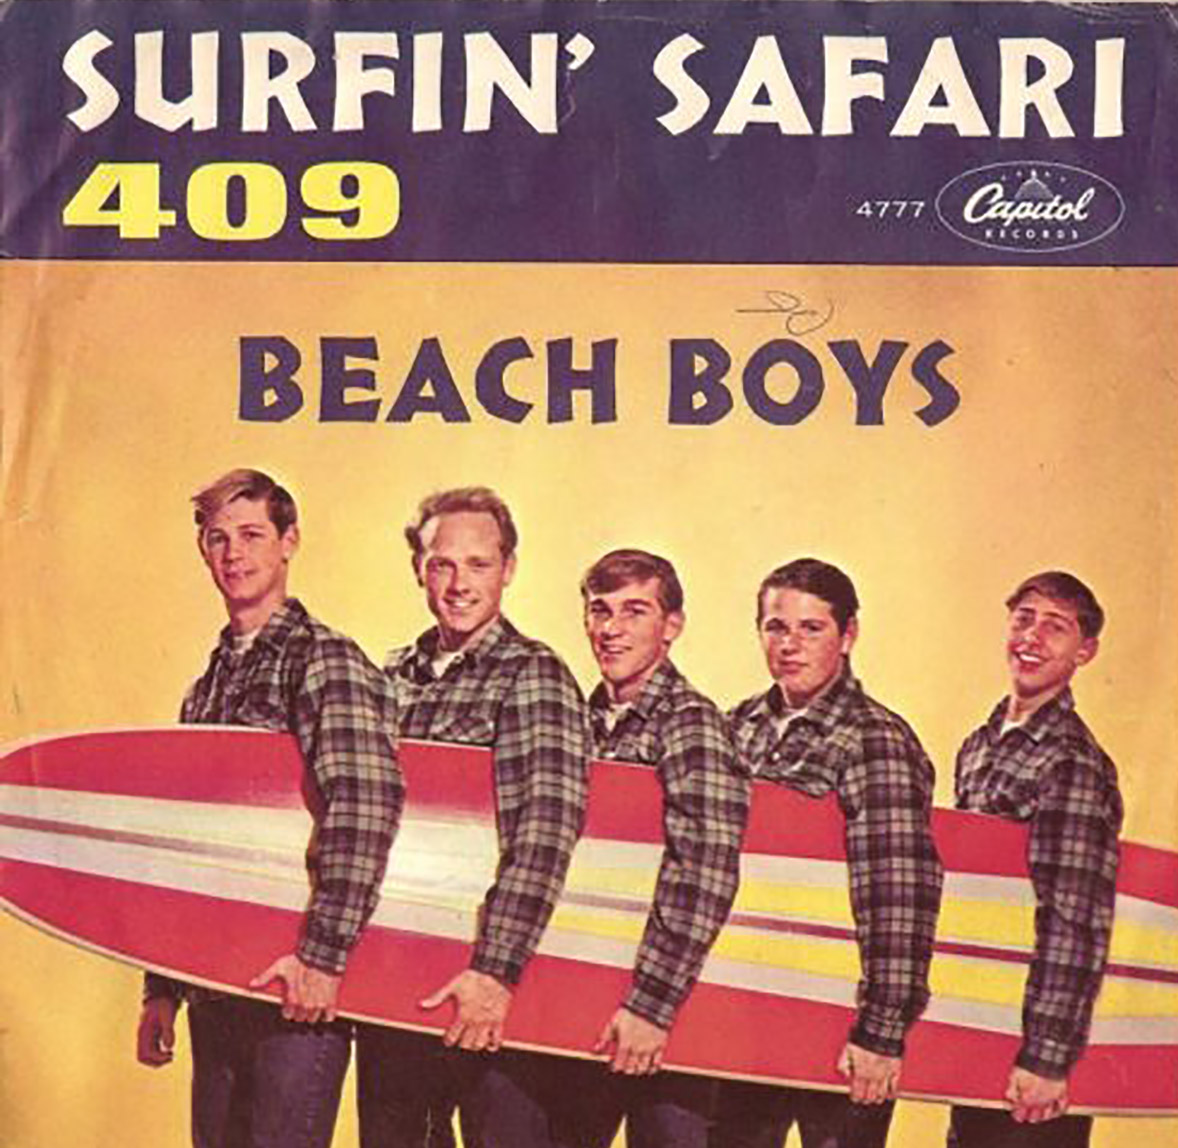 Thursday CarTune: 409 by The Beach Boys